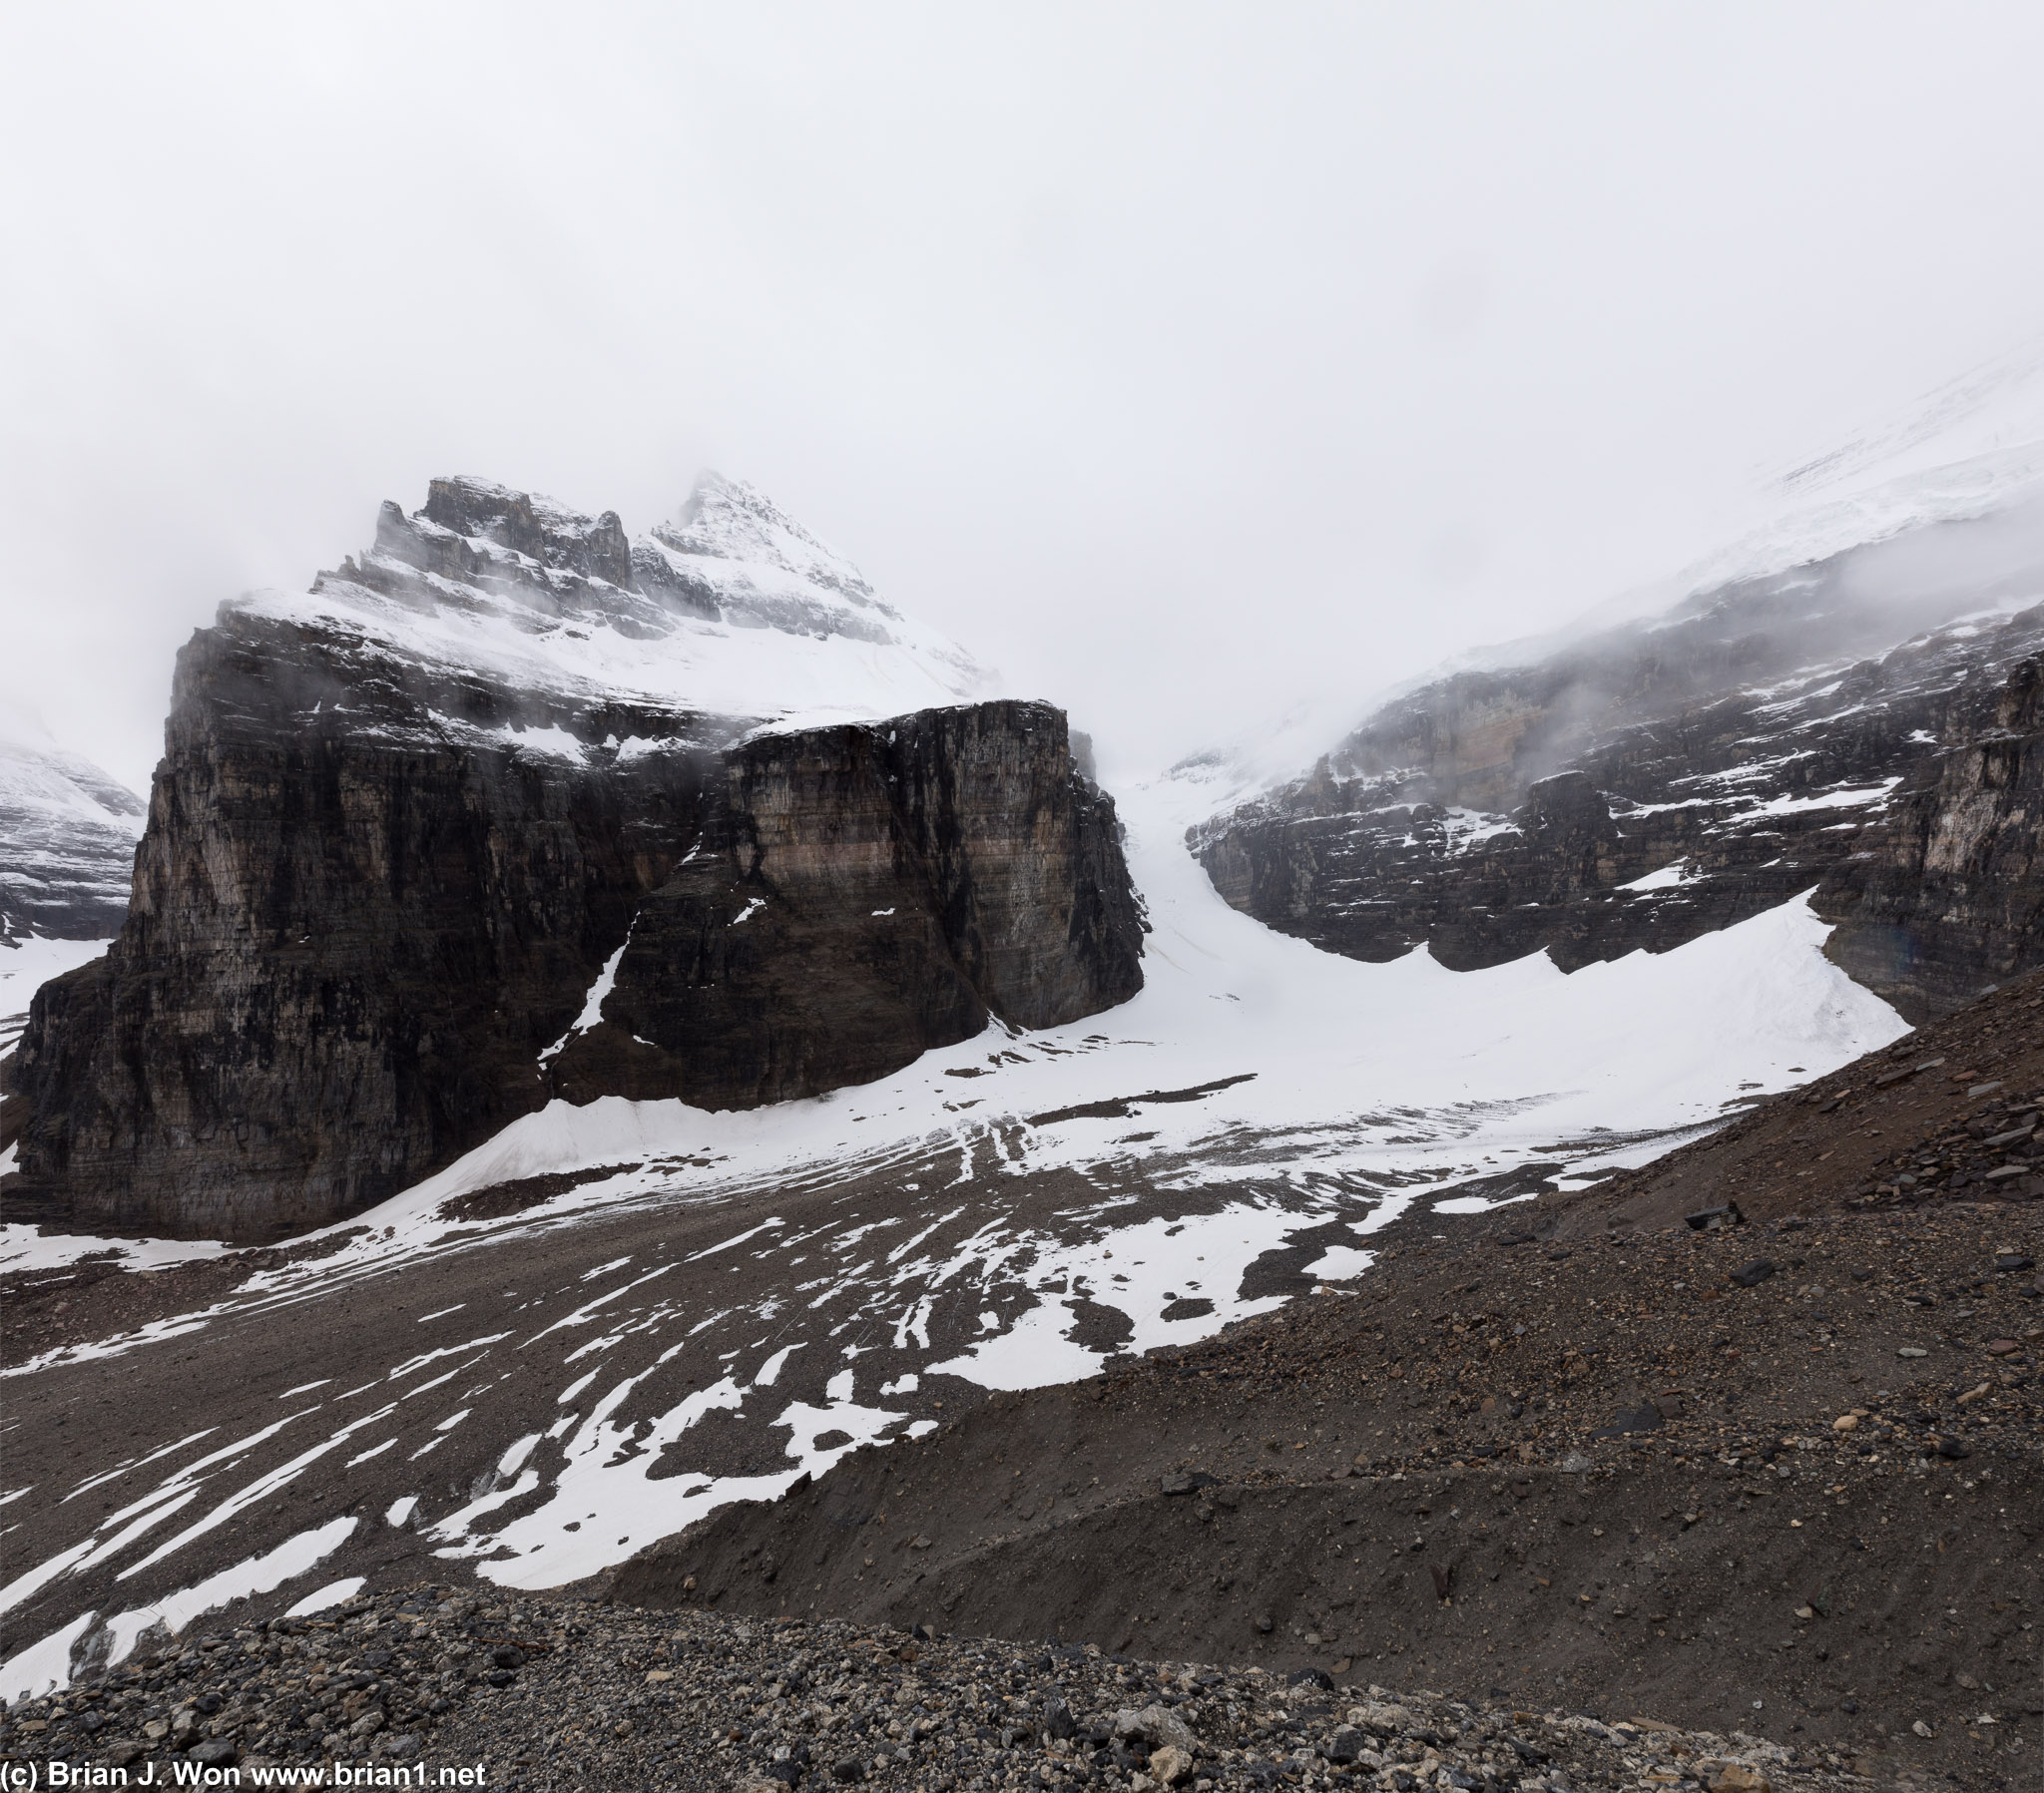 Victoria Glacier and Mount Lefroy.